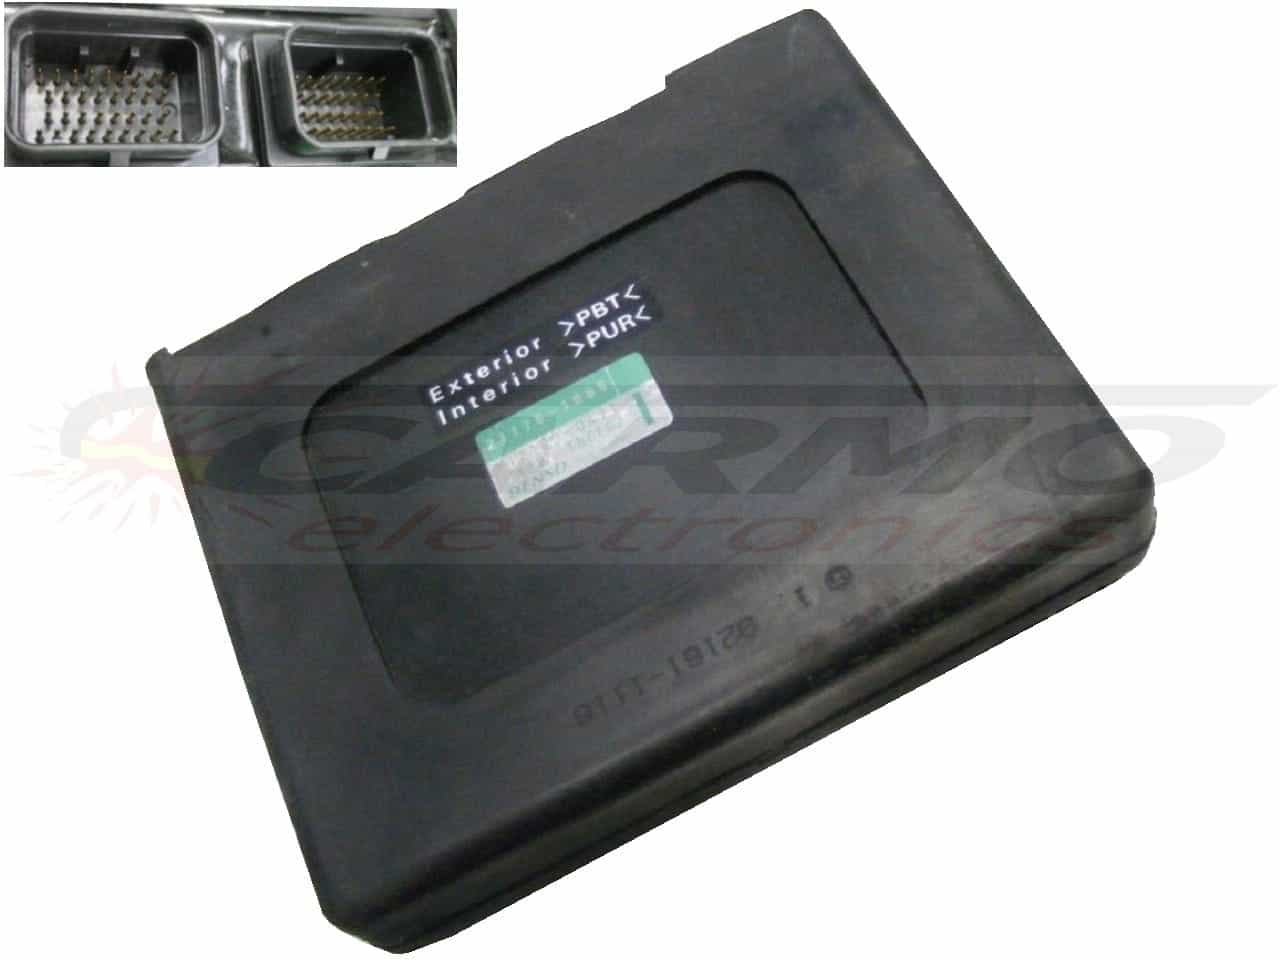 ZX12 (1200) Ninja CDI ECU (21175-1068) ECU controller